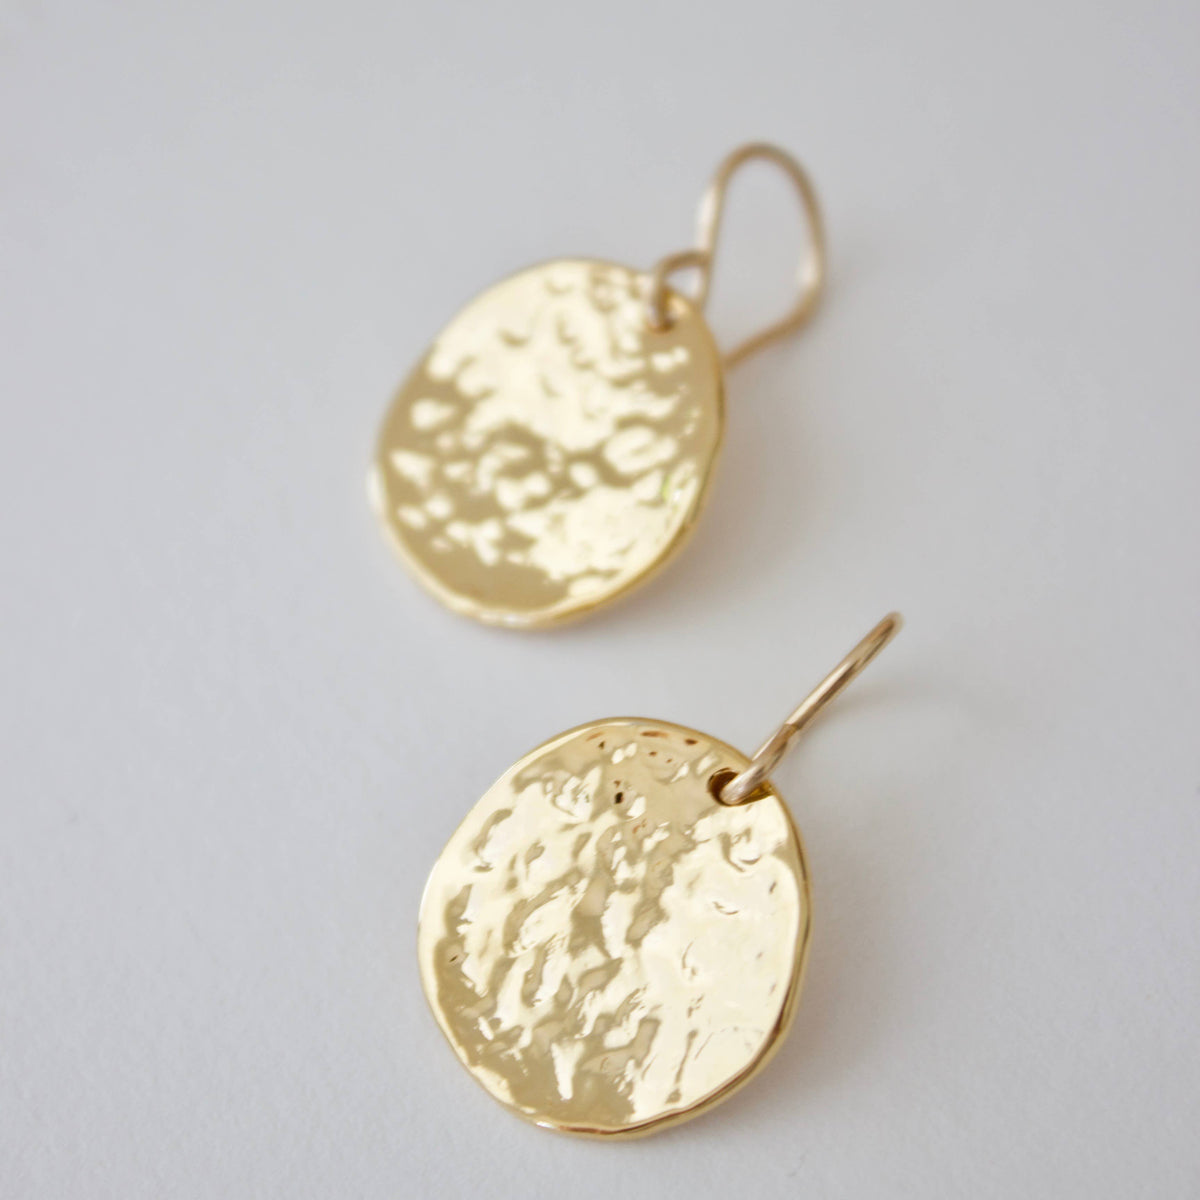 Hammered Medallion Earrings: Gold